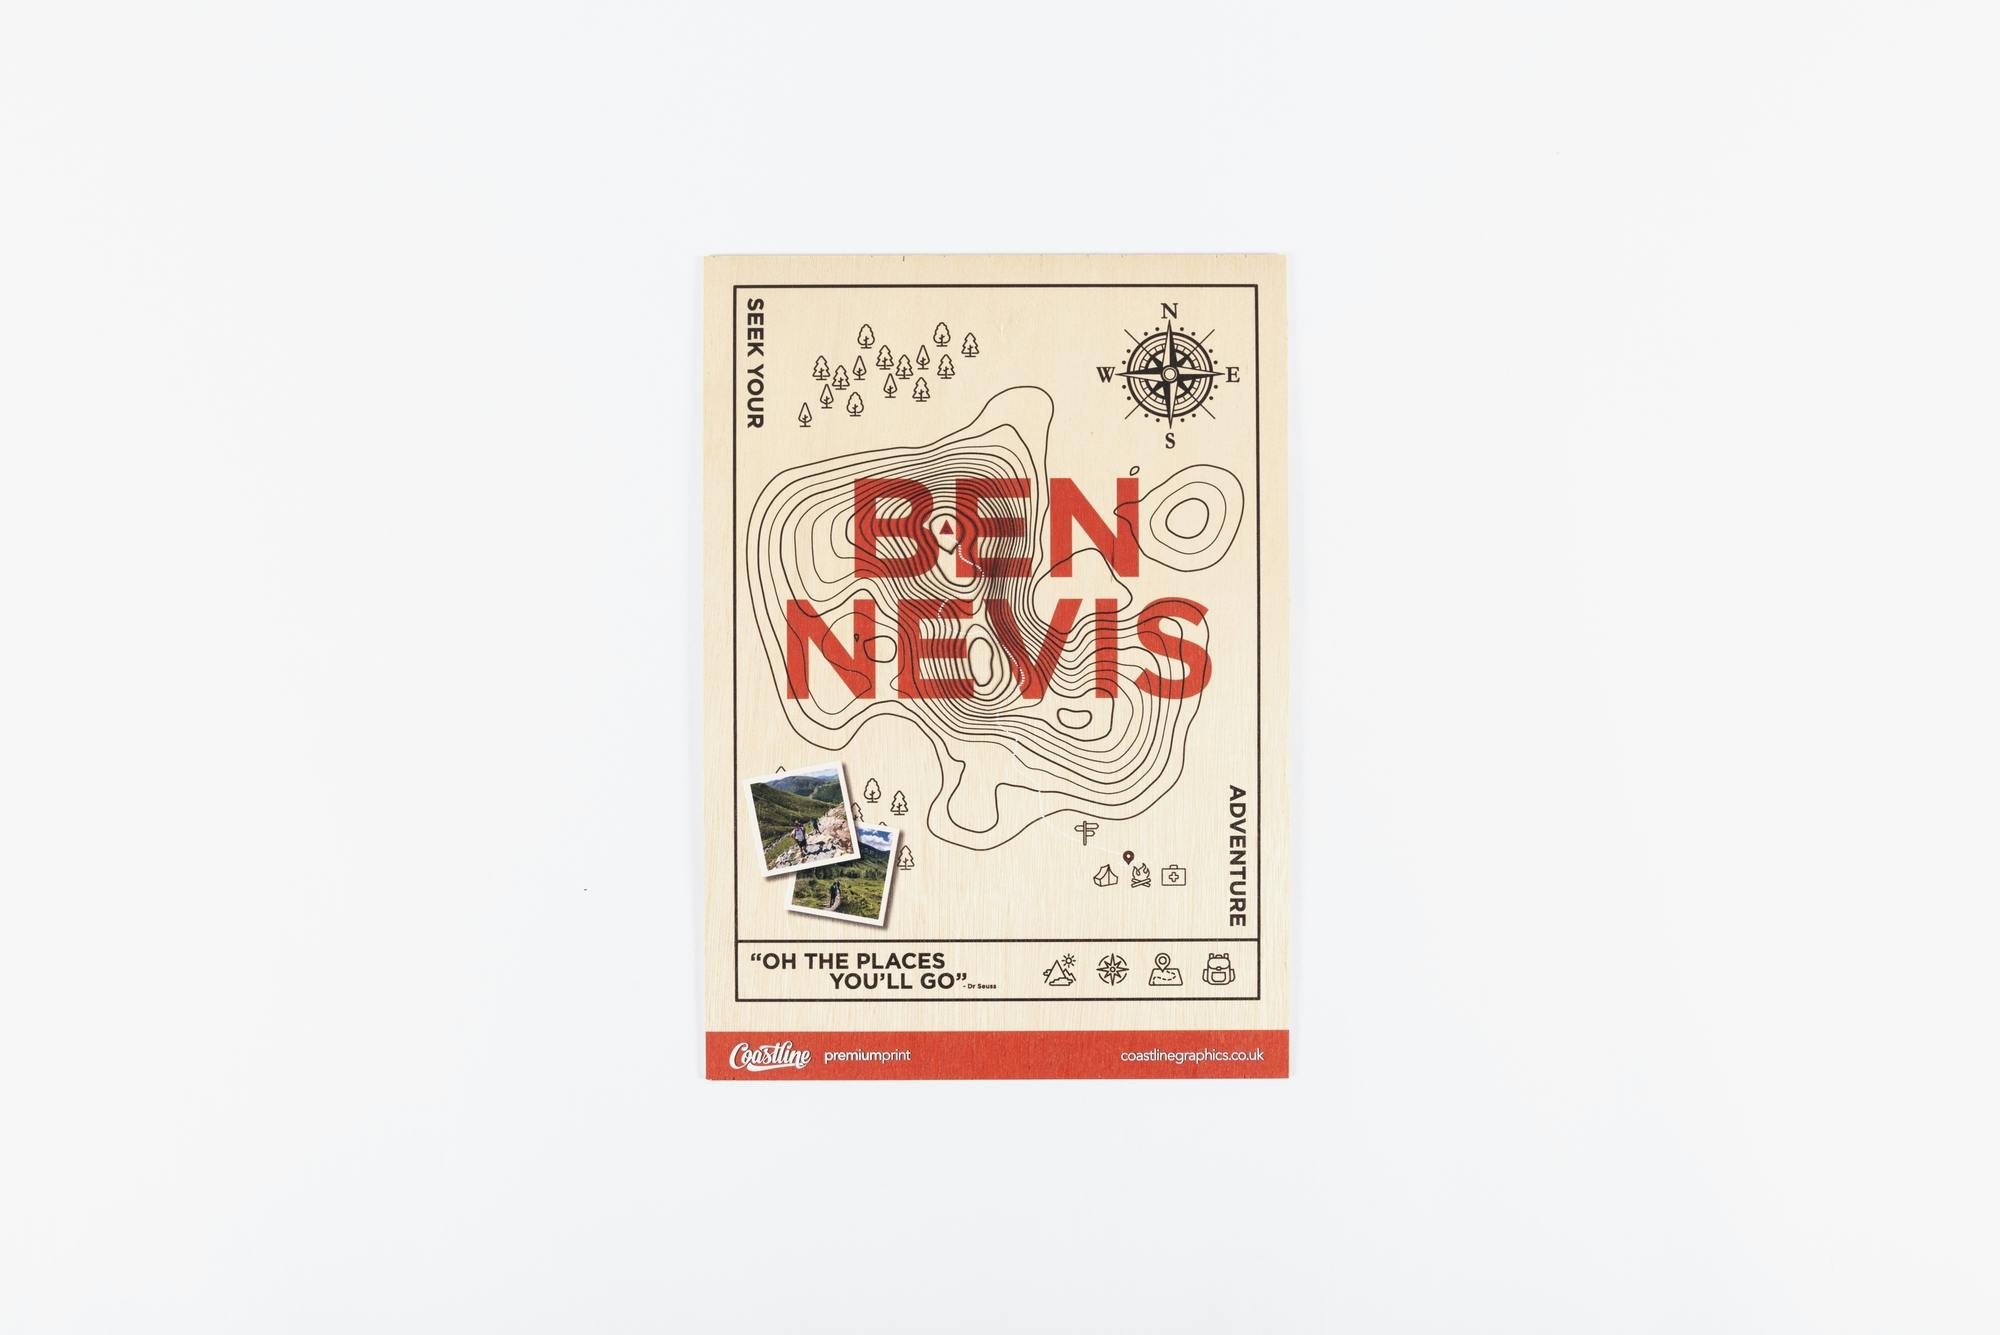 Ben Nevis relief print © swissQprint 